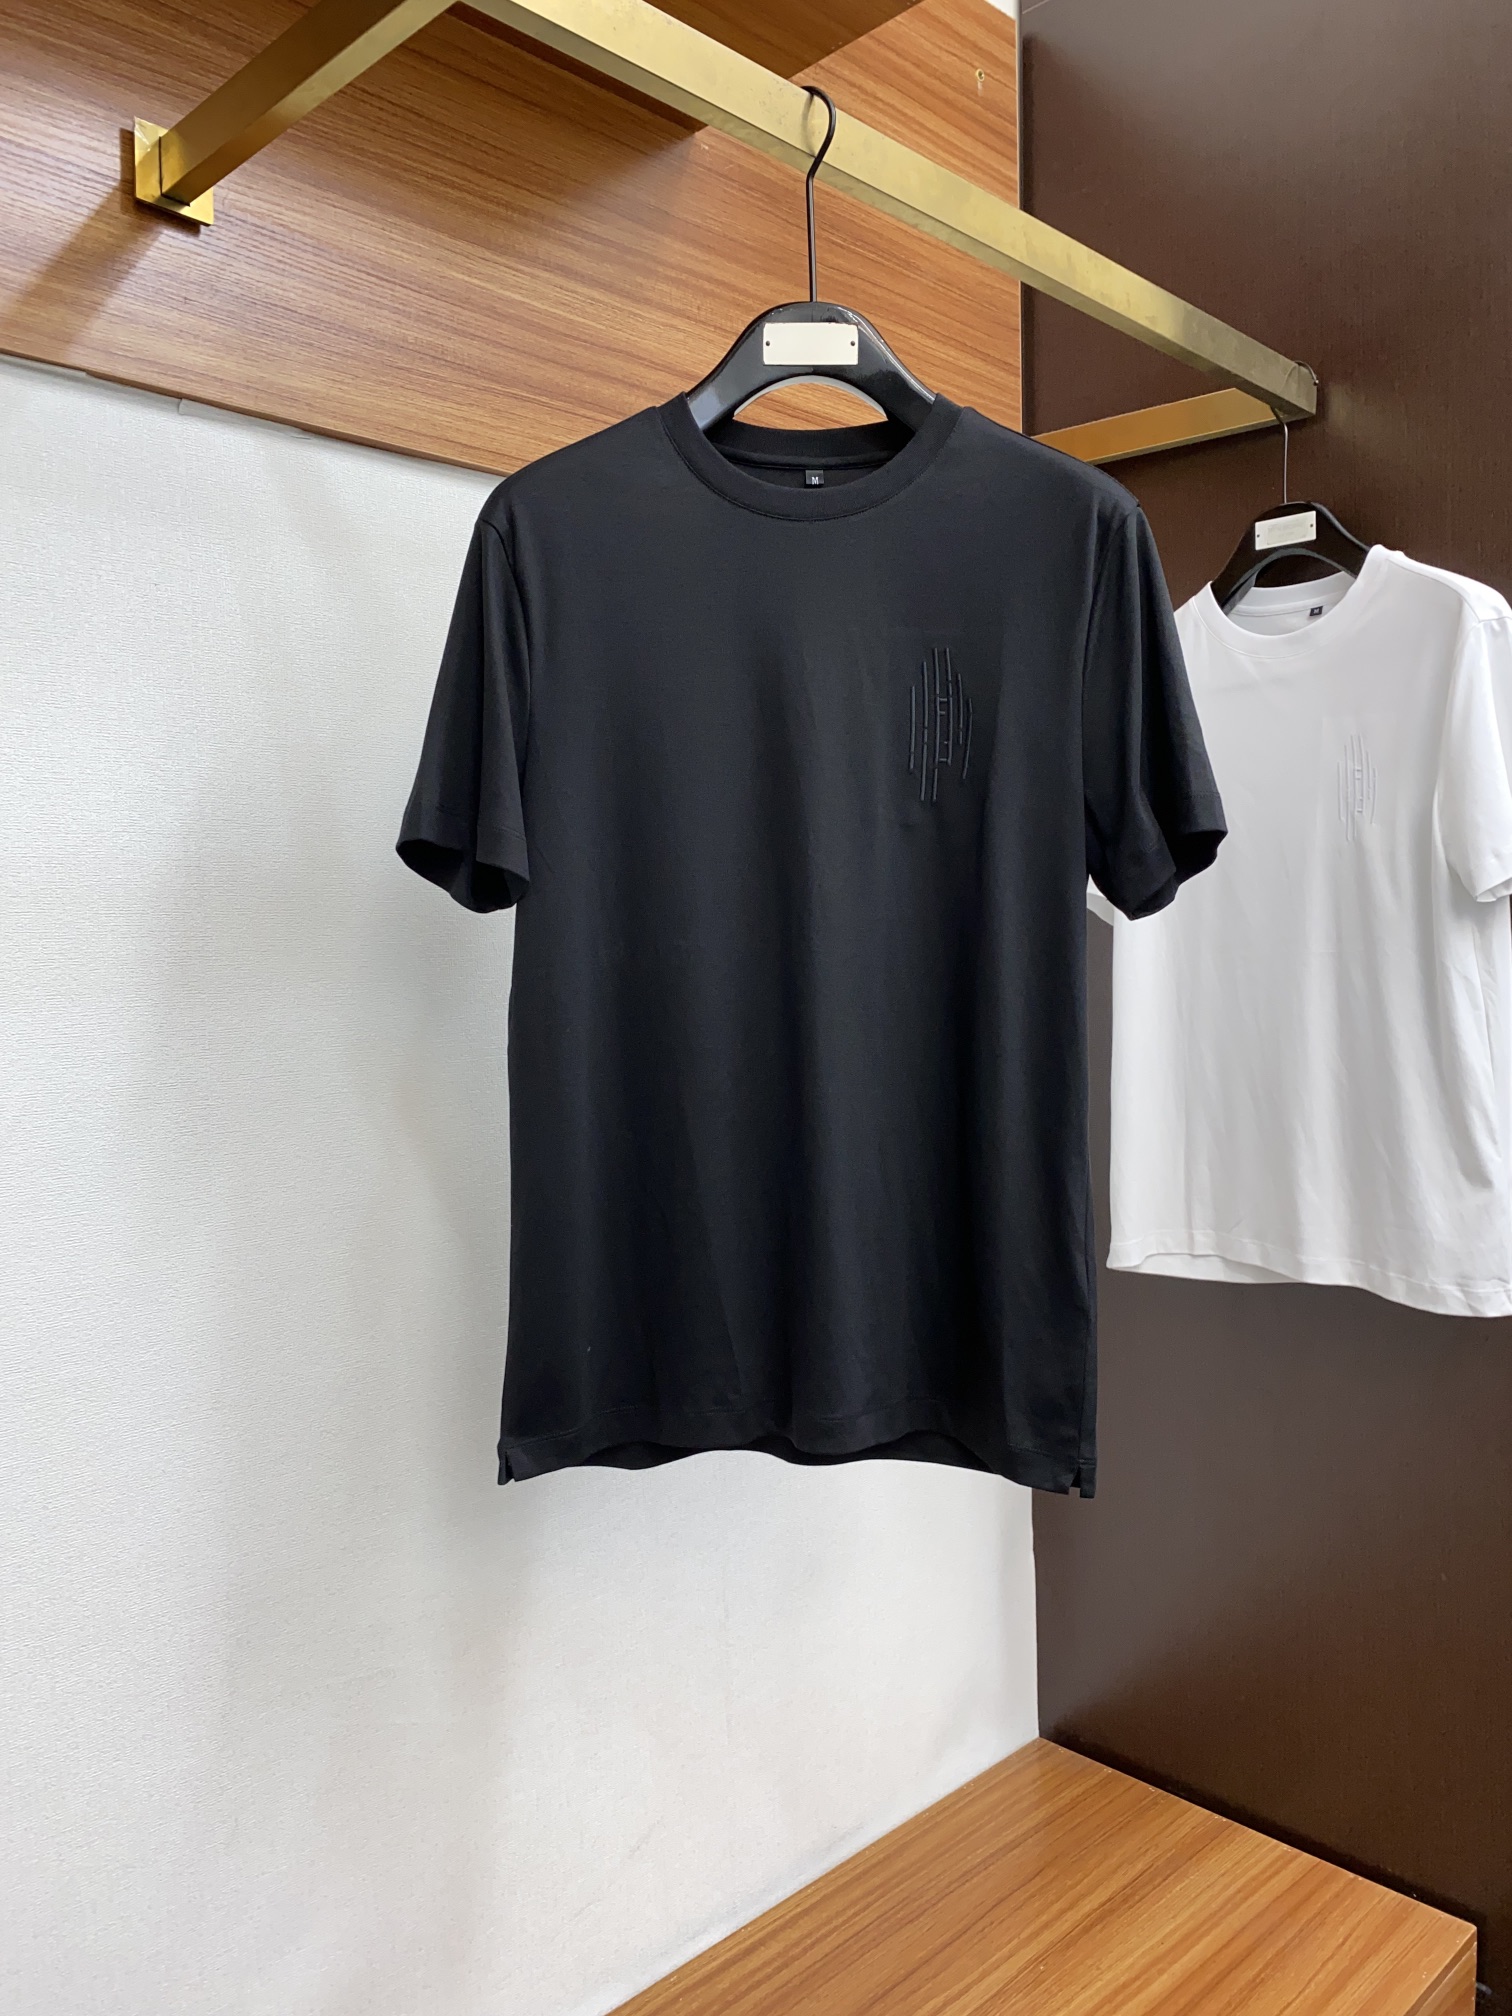 フェンディ メンズ t シャツ偽物 トップス 綿100% プリント 短袖 ゆったり シンプル 柔らかい メンズ ブラック_1